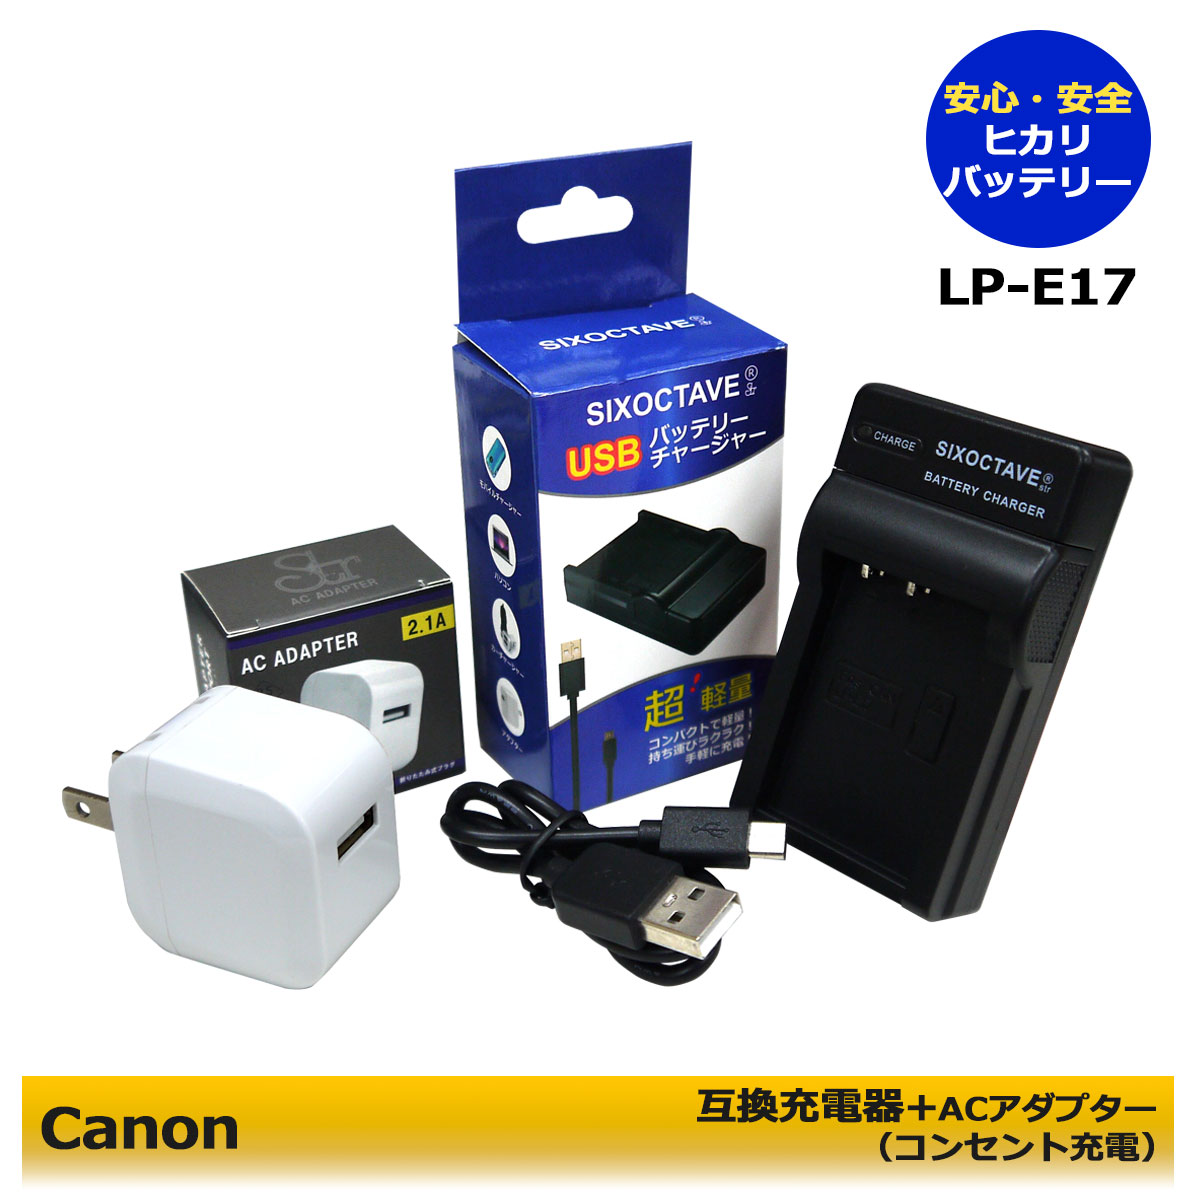 ★コンセント充電可能★キャノン LP-E17 互...の商品画像